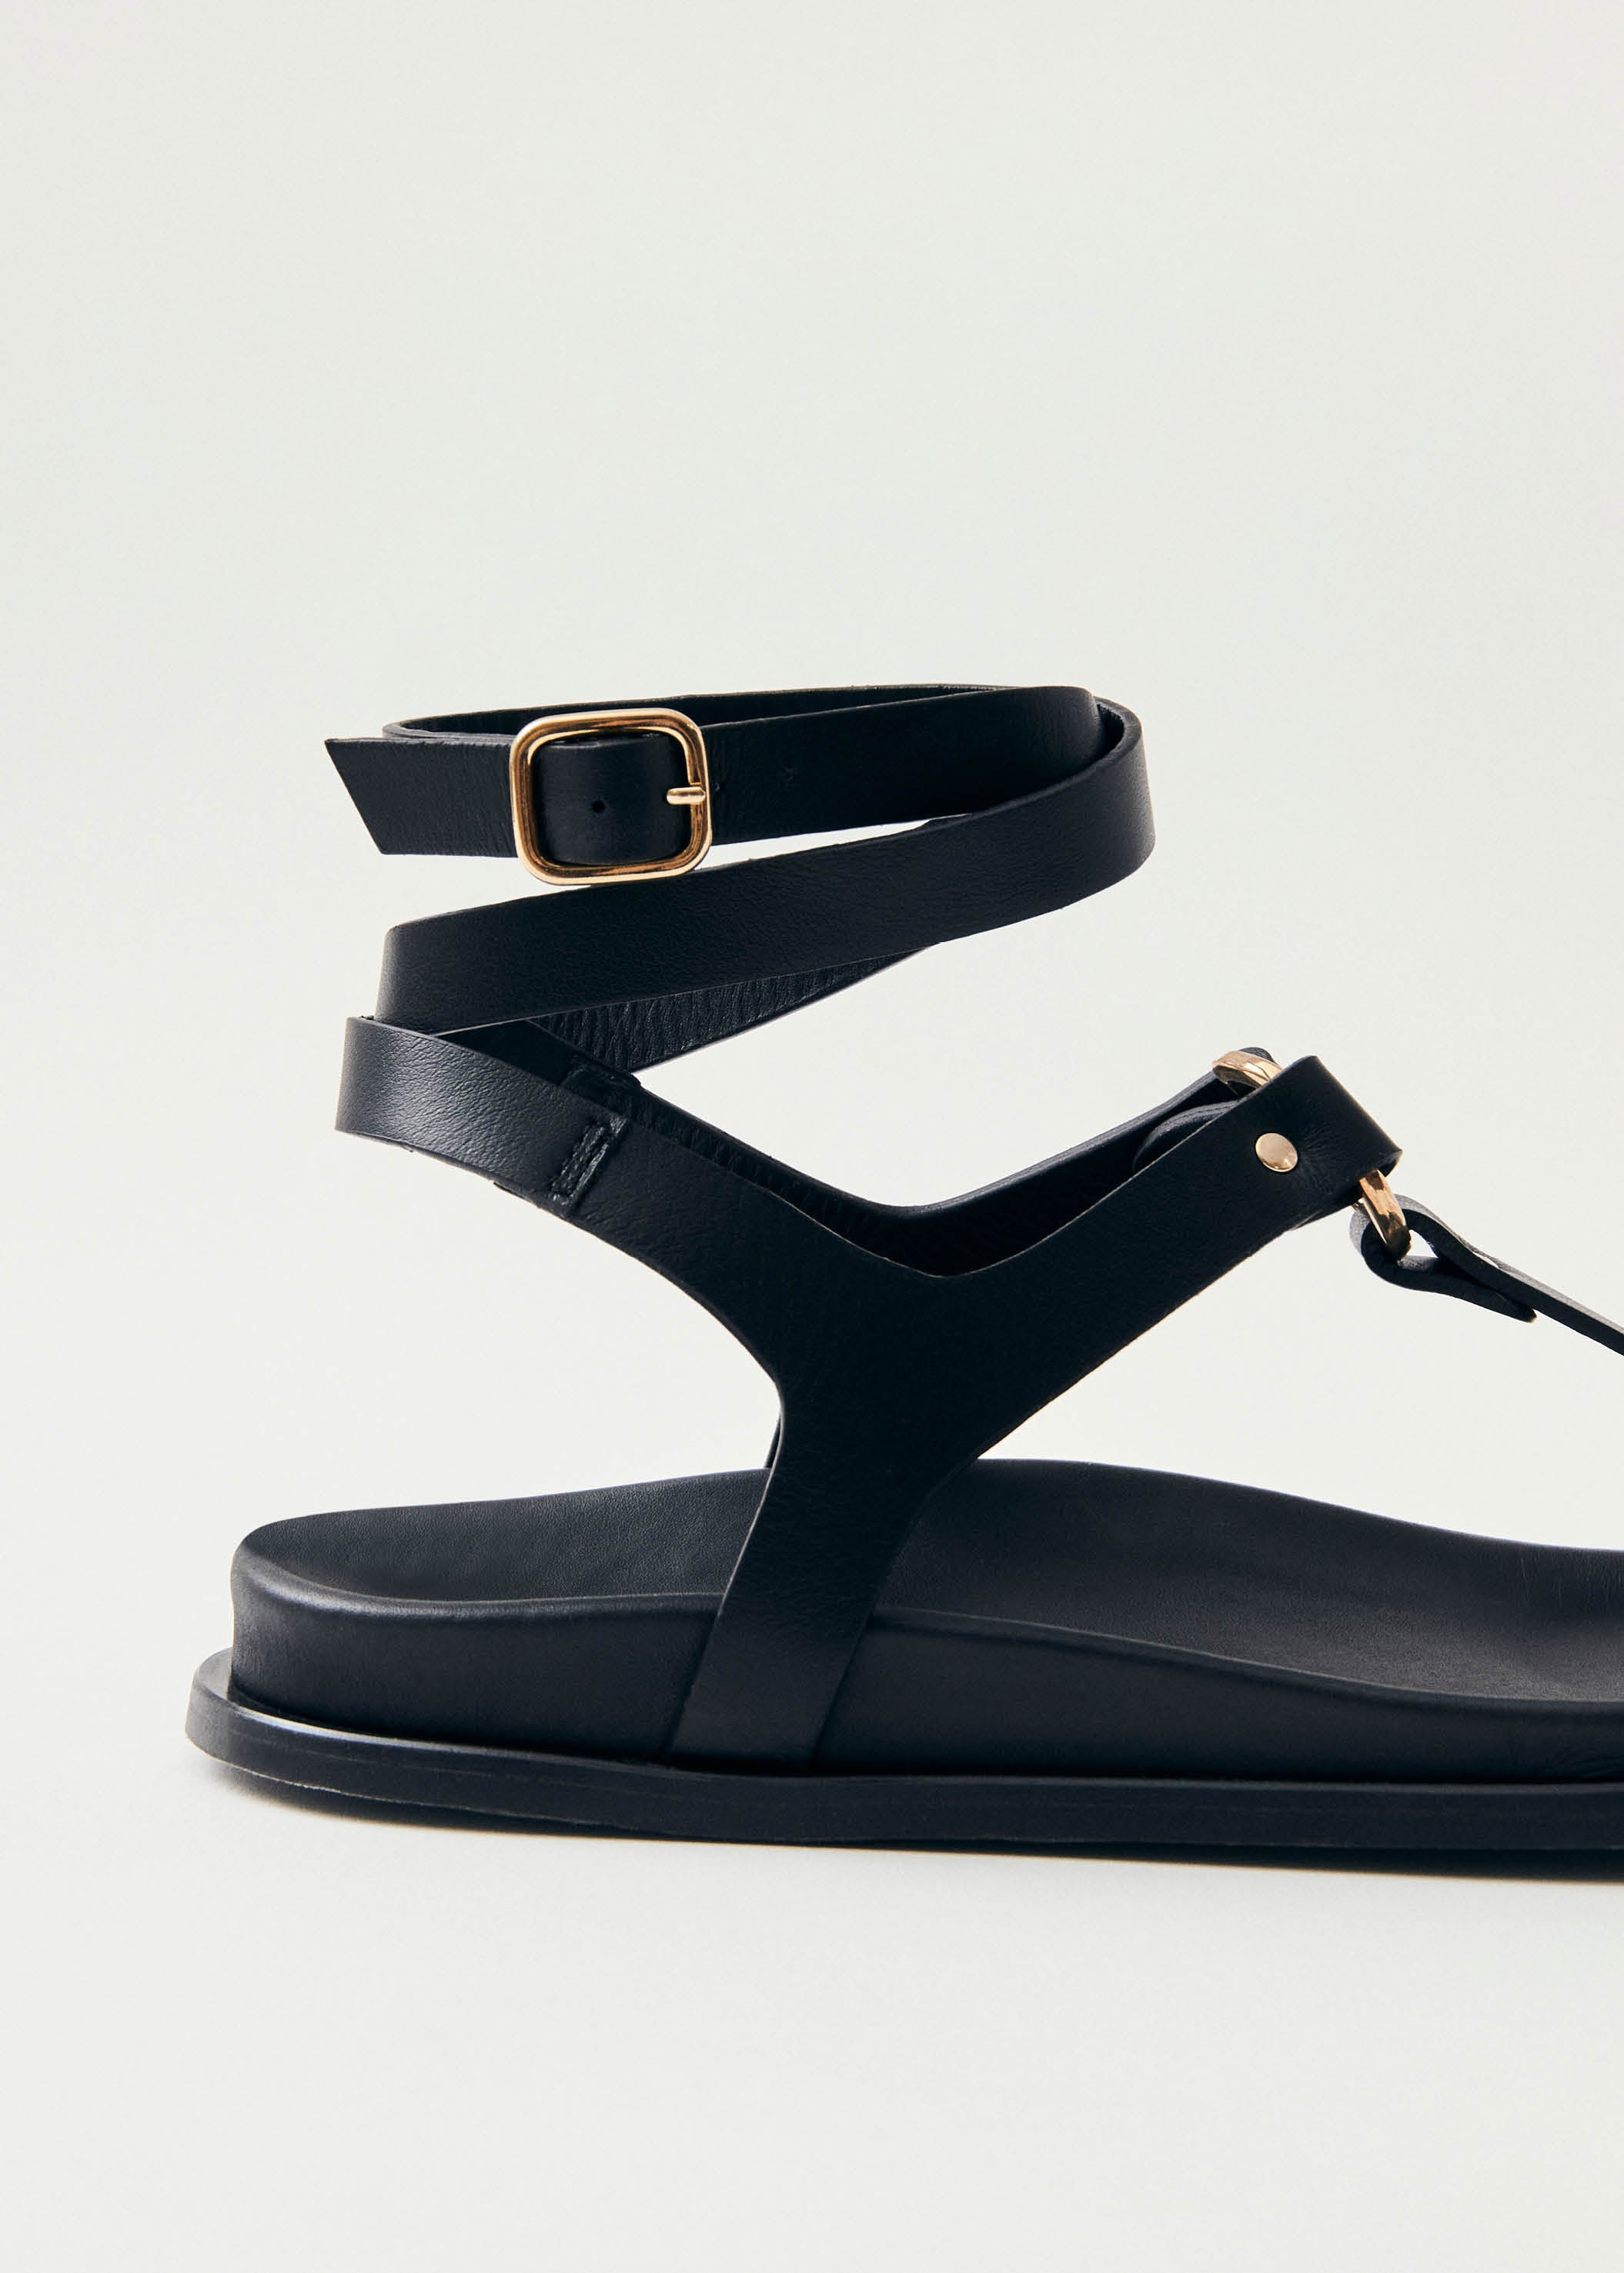 Project Cece | Kizzi Black Leather Sandals